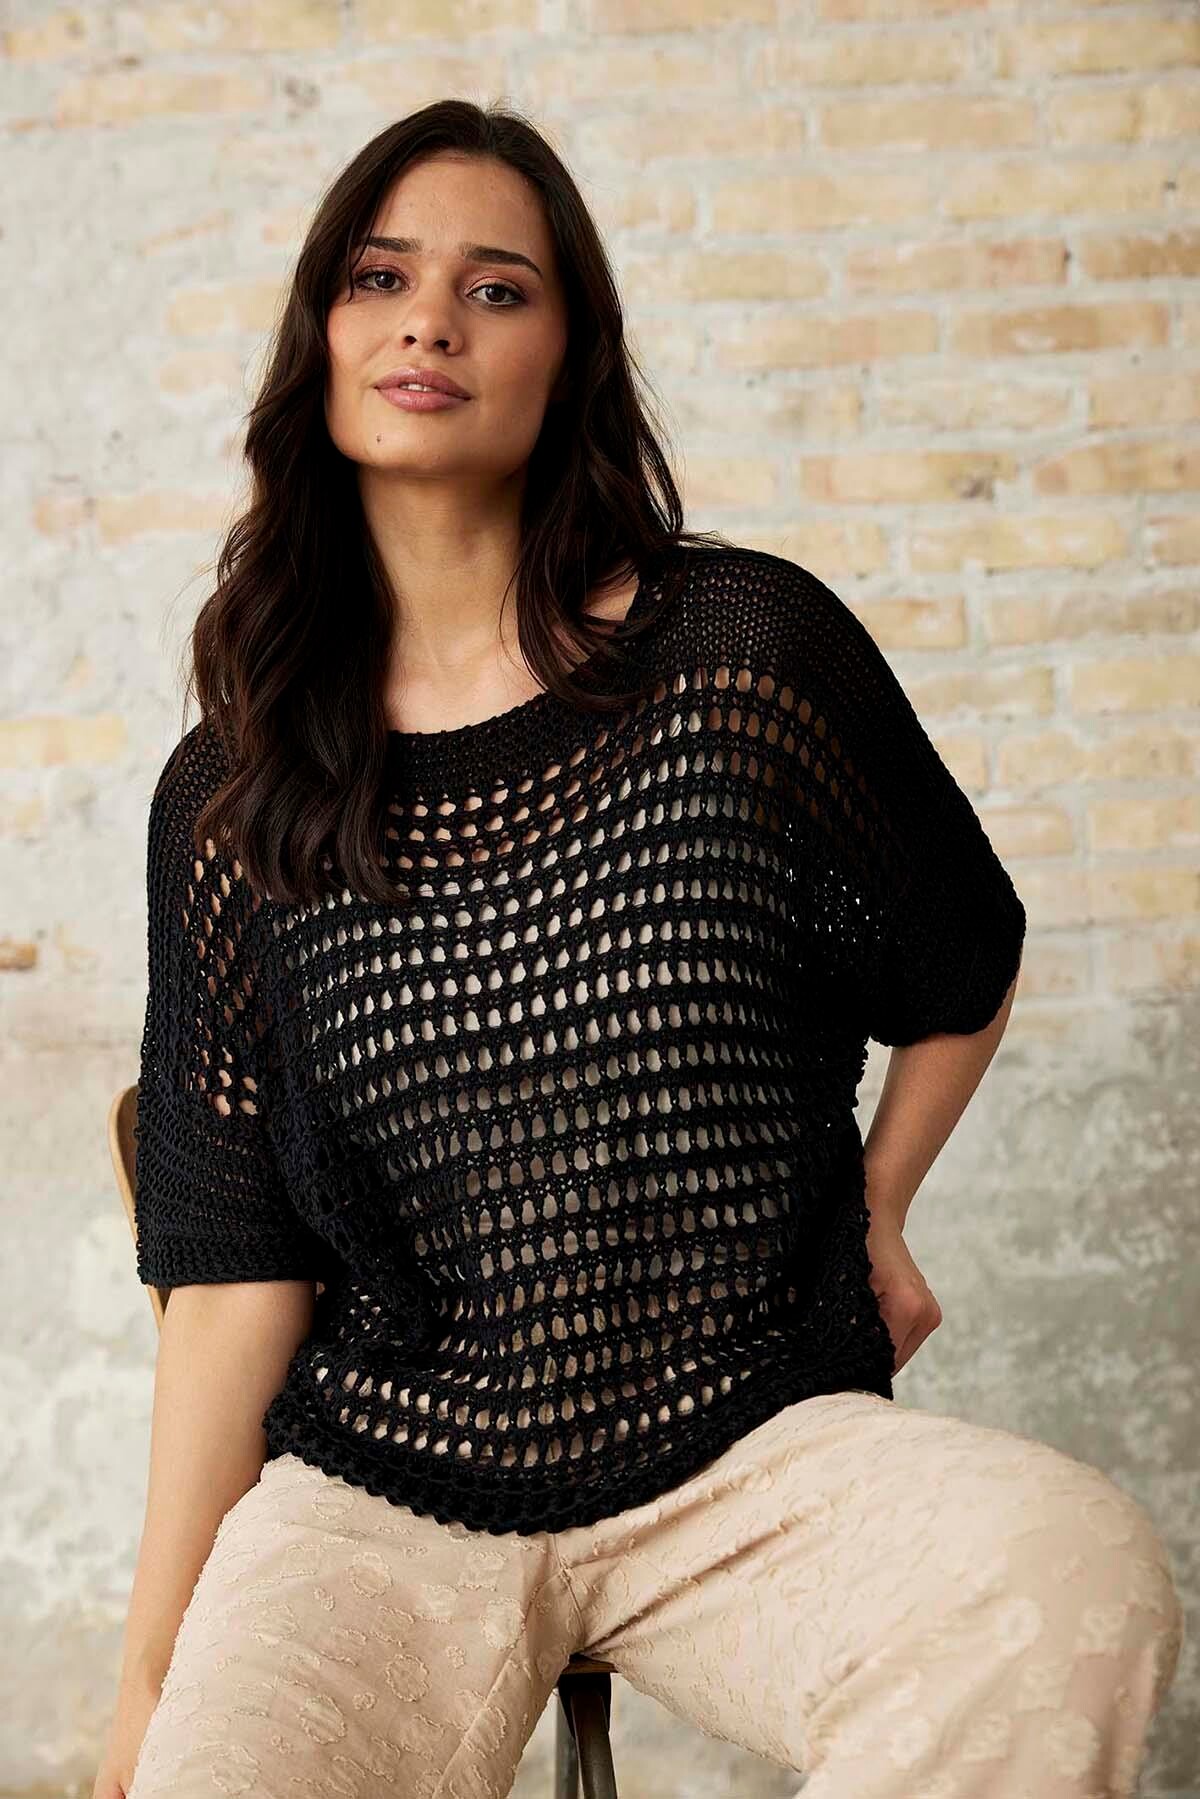 Se IN FRONT Nova Knit Bluse, Farve: Black, Størrelse: M/L, Dame hos Infront Women